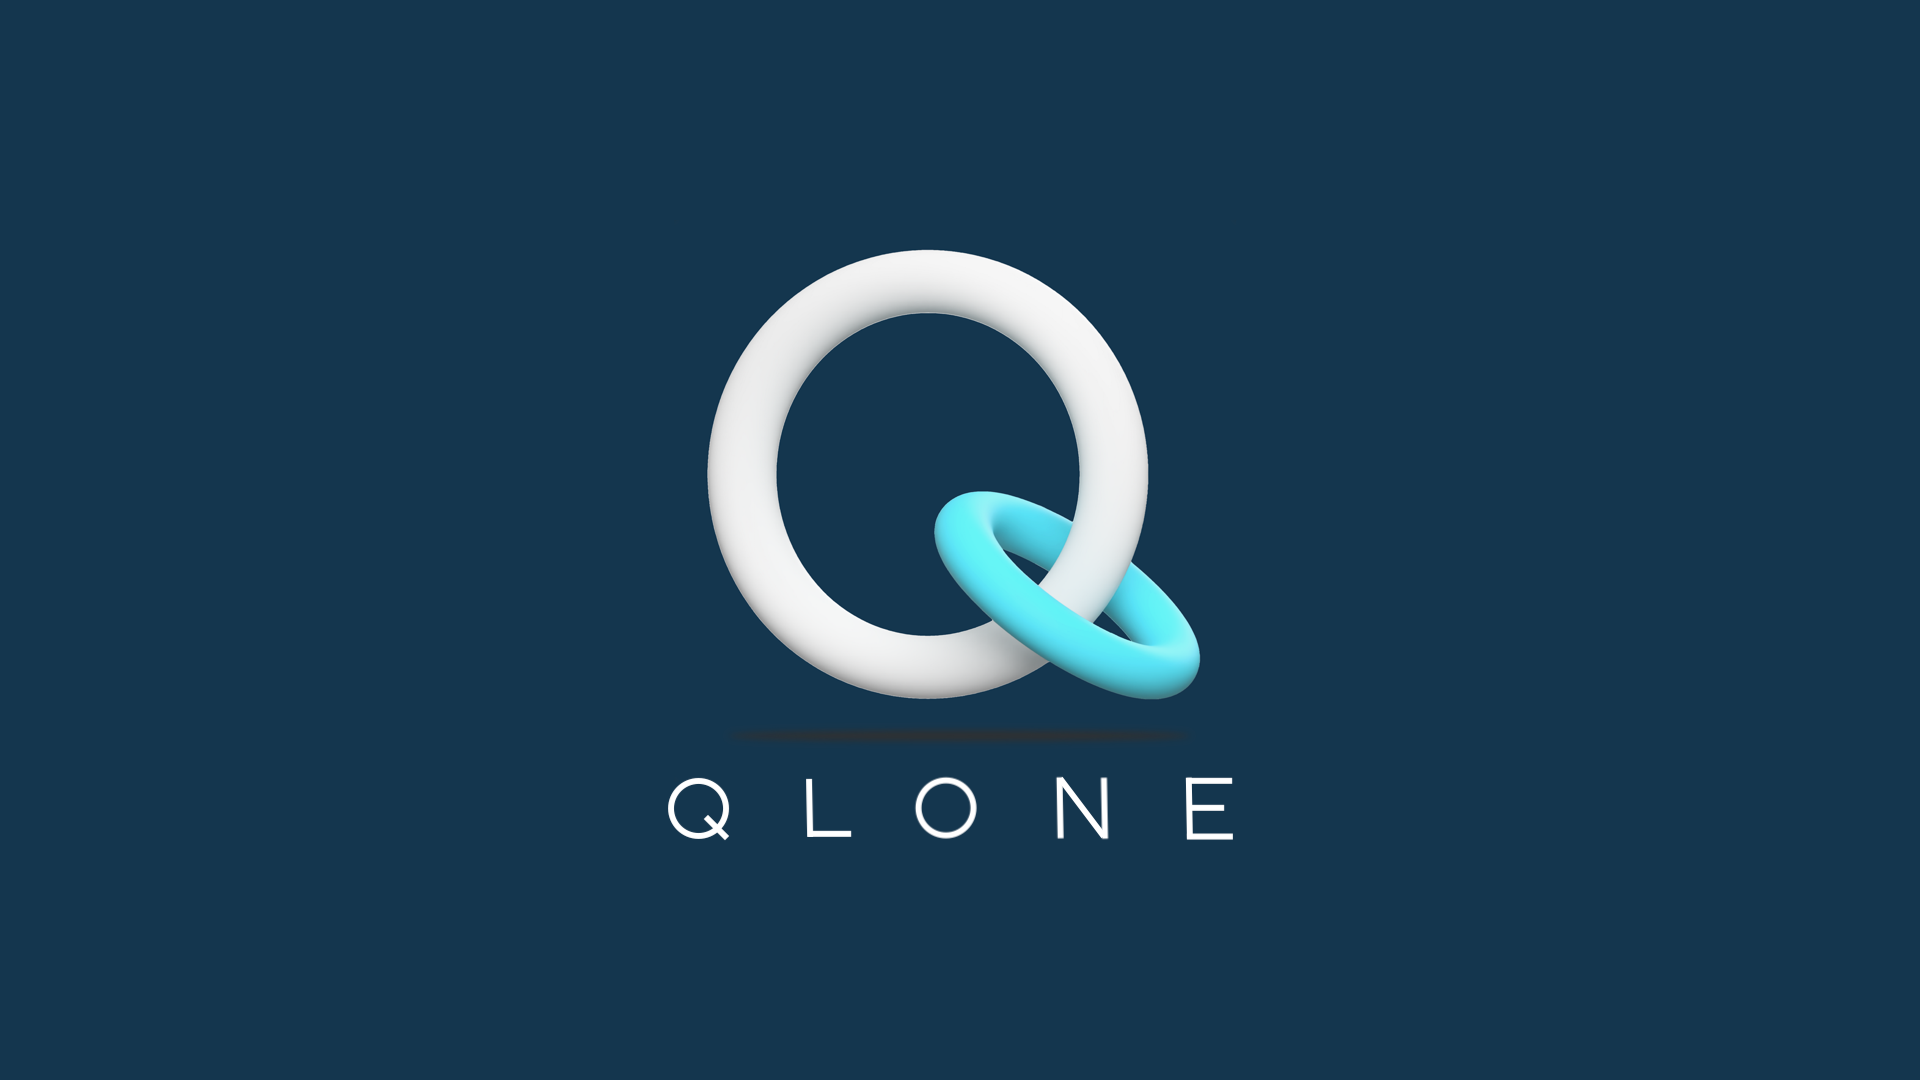 Qlone-拡張現実のために写真を3Dモデルに変換するアプリ